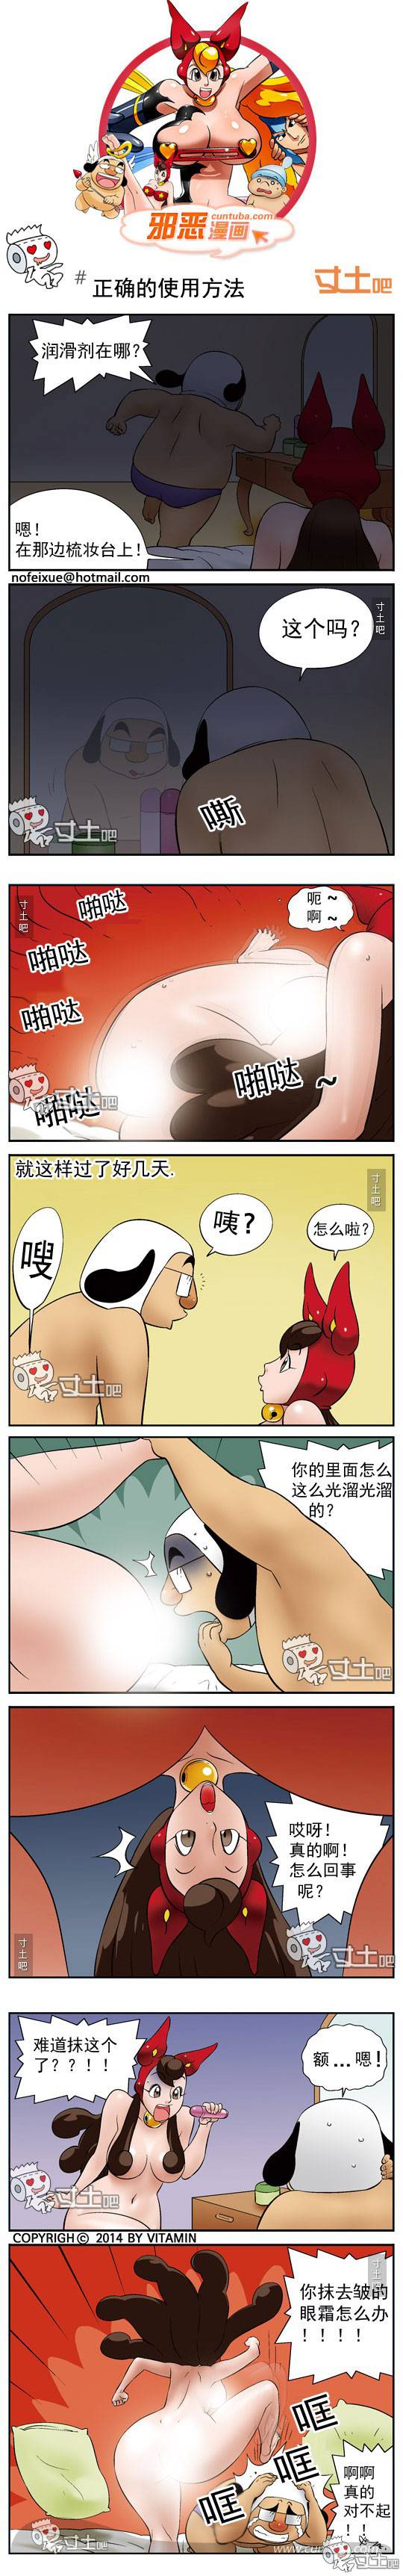 邪恶漫画爆笑囧图第254刊：真正的幸福生活